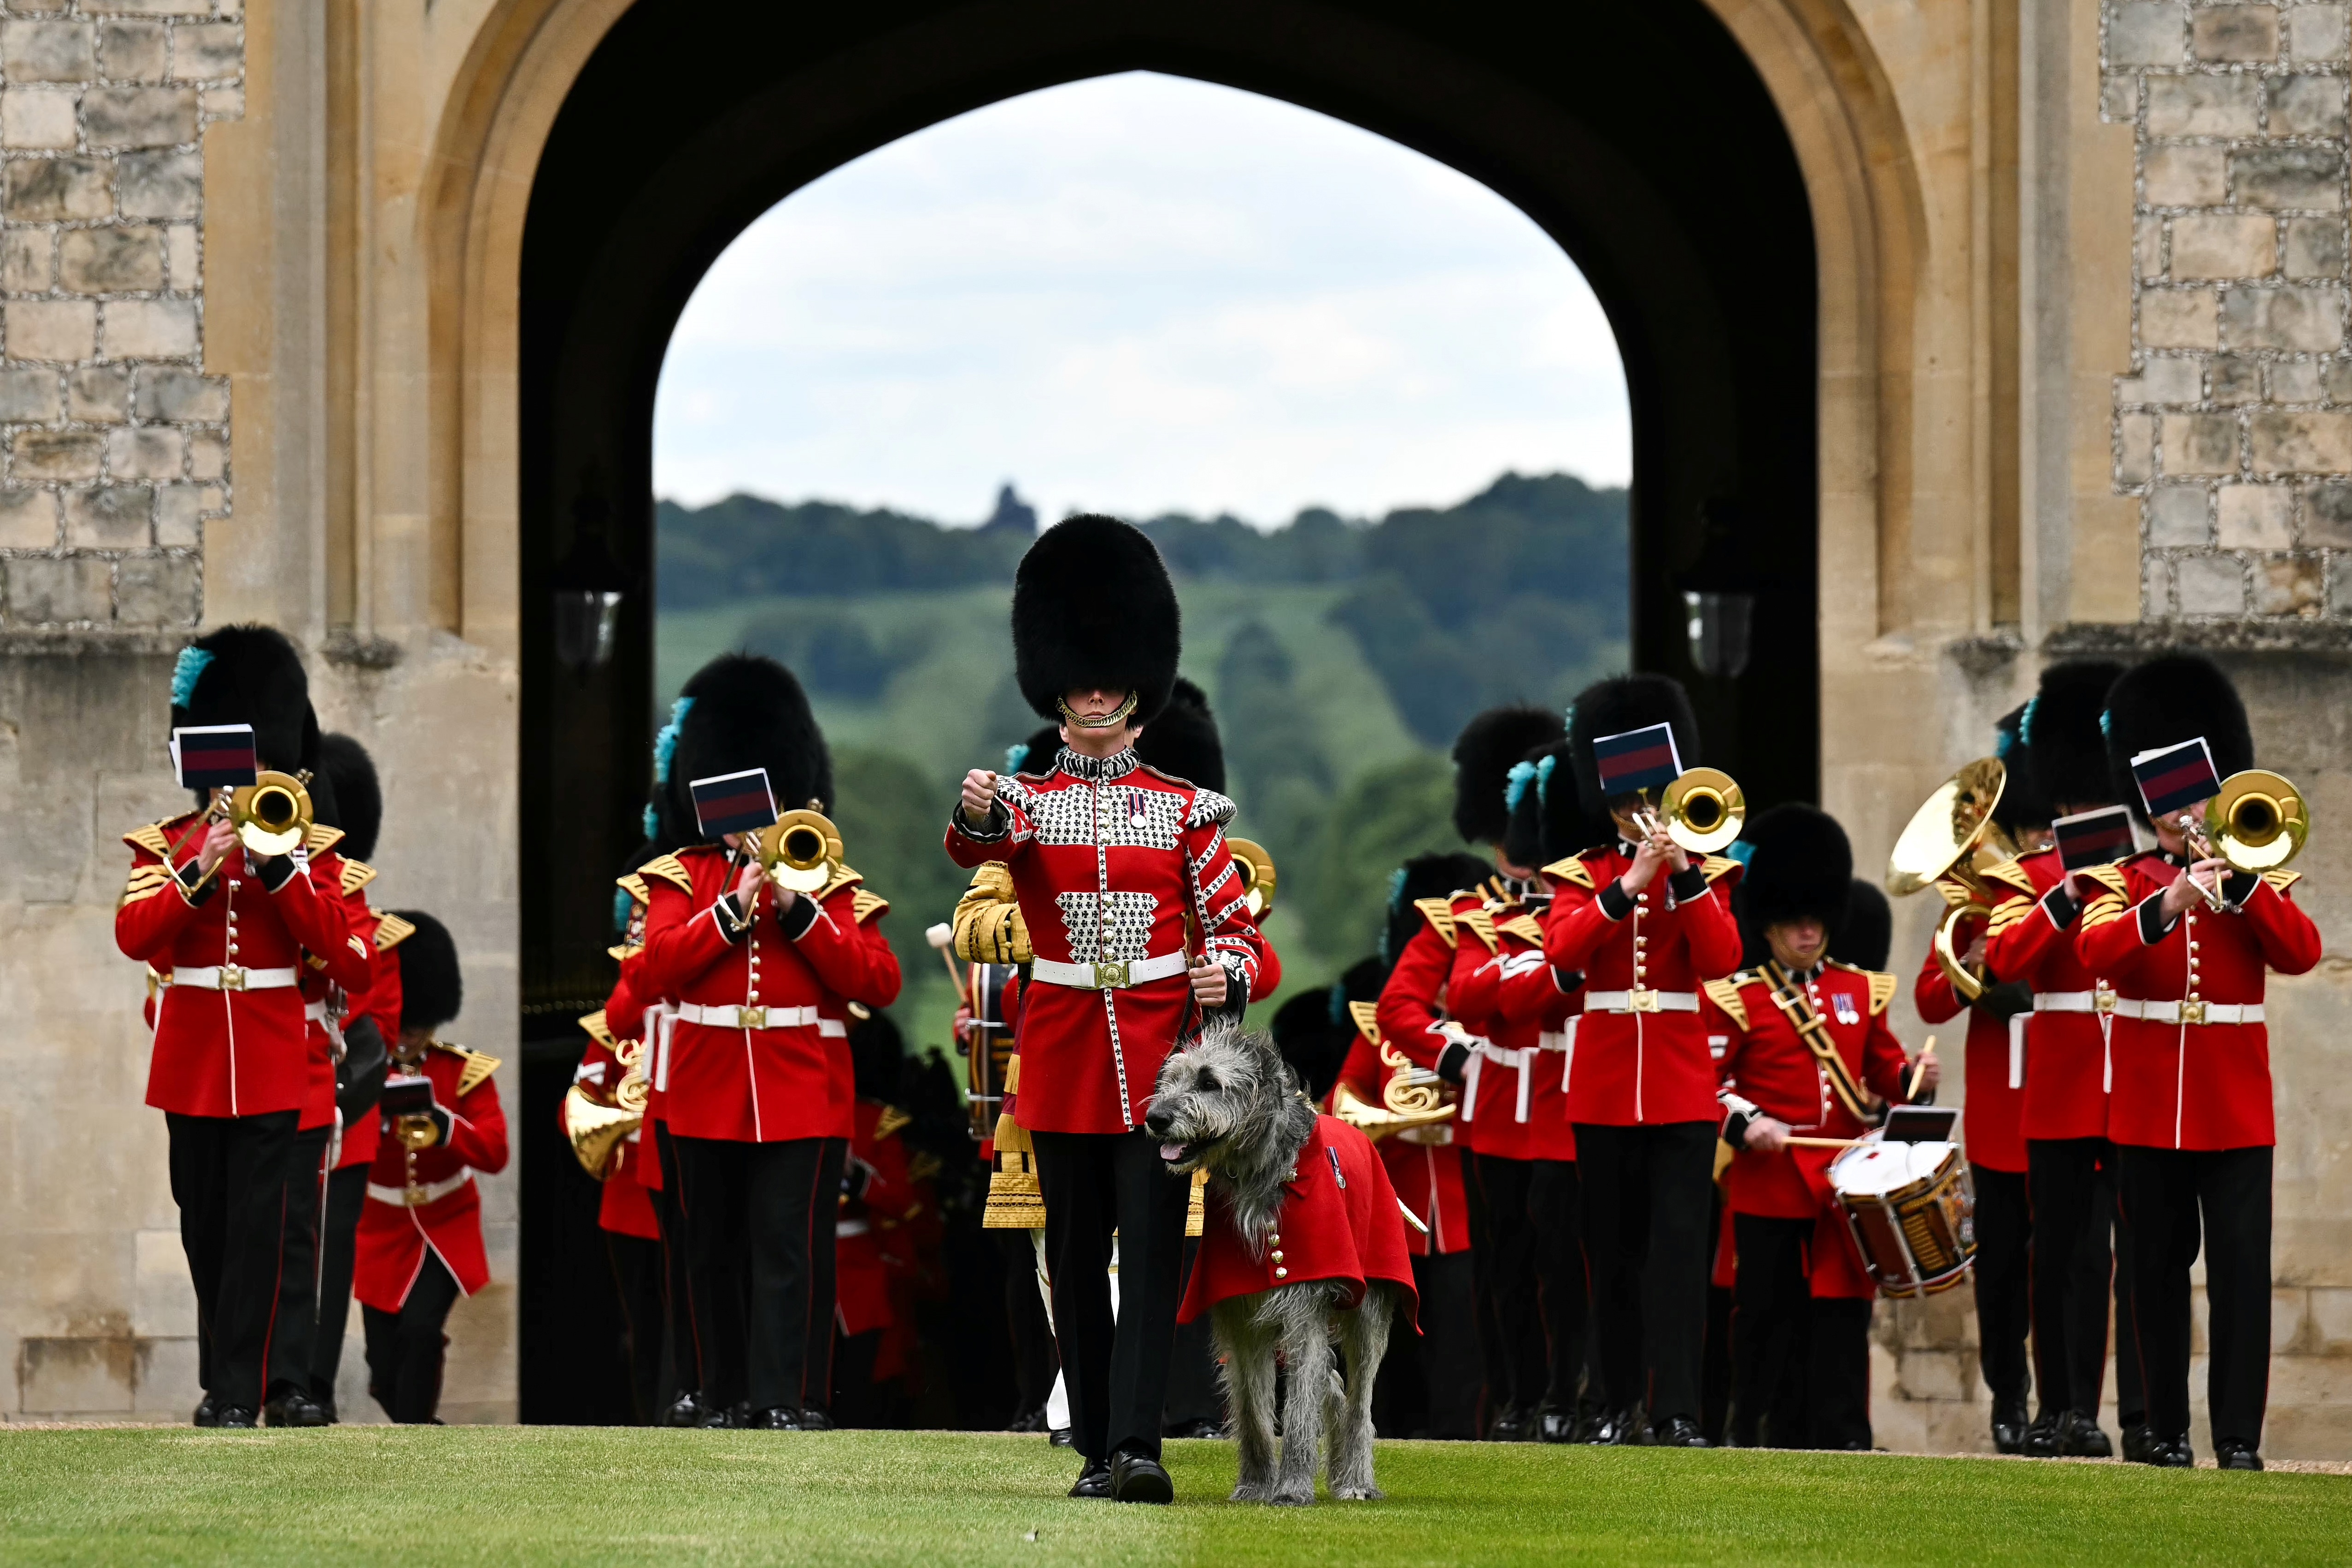 La présentation des nouvelles couleurs aux compagnies n°9 et n°12 a commencé avec la fanfare des gardes irlandais les faisant entrer dans le château de Windsor.